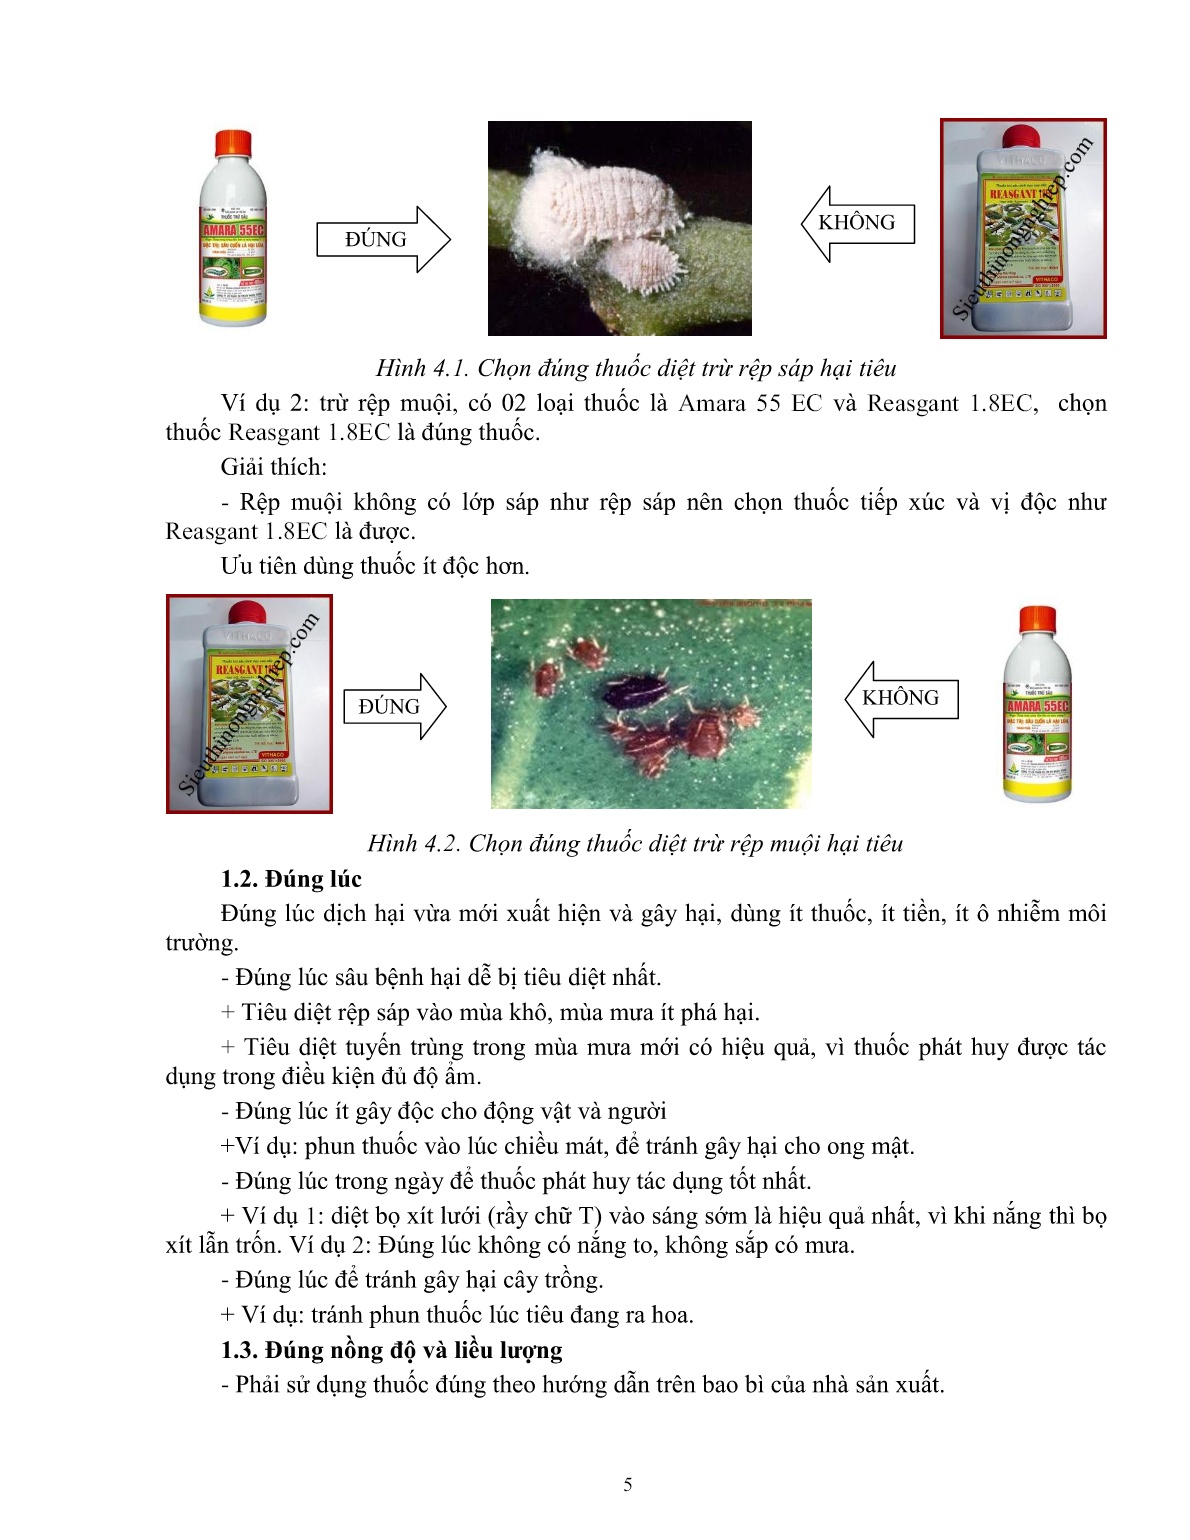 Giáo trình mô đun Bảo vệ thực vật trên cây tiêu (Trình độ: Đào tạo dưới 3 tháng) trang 5